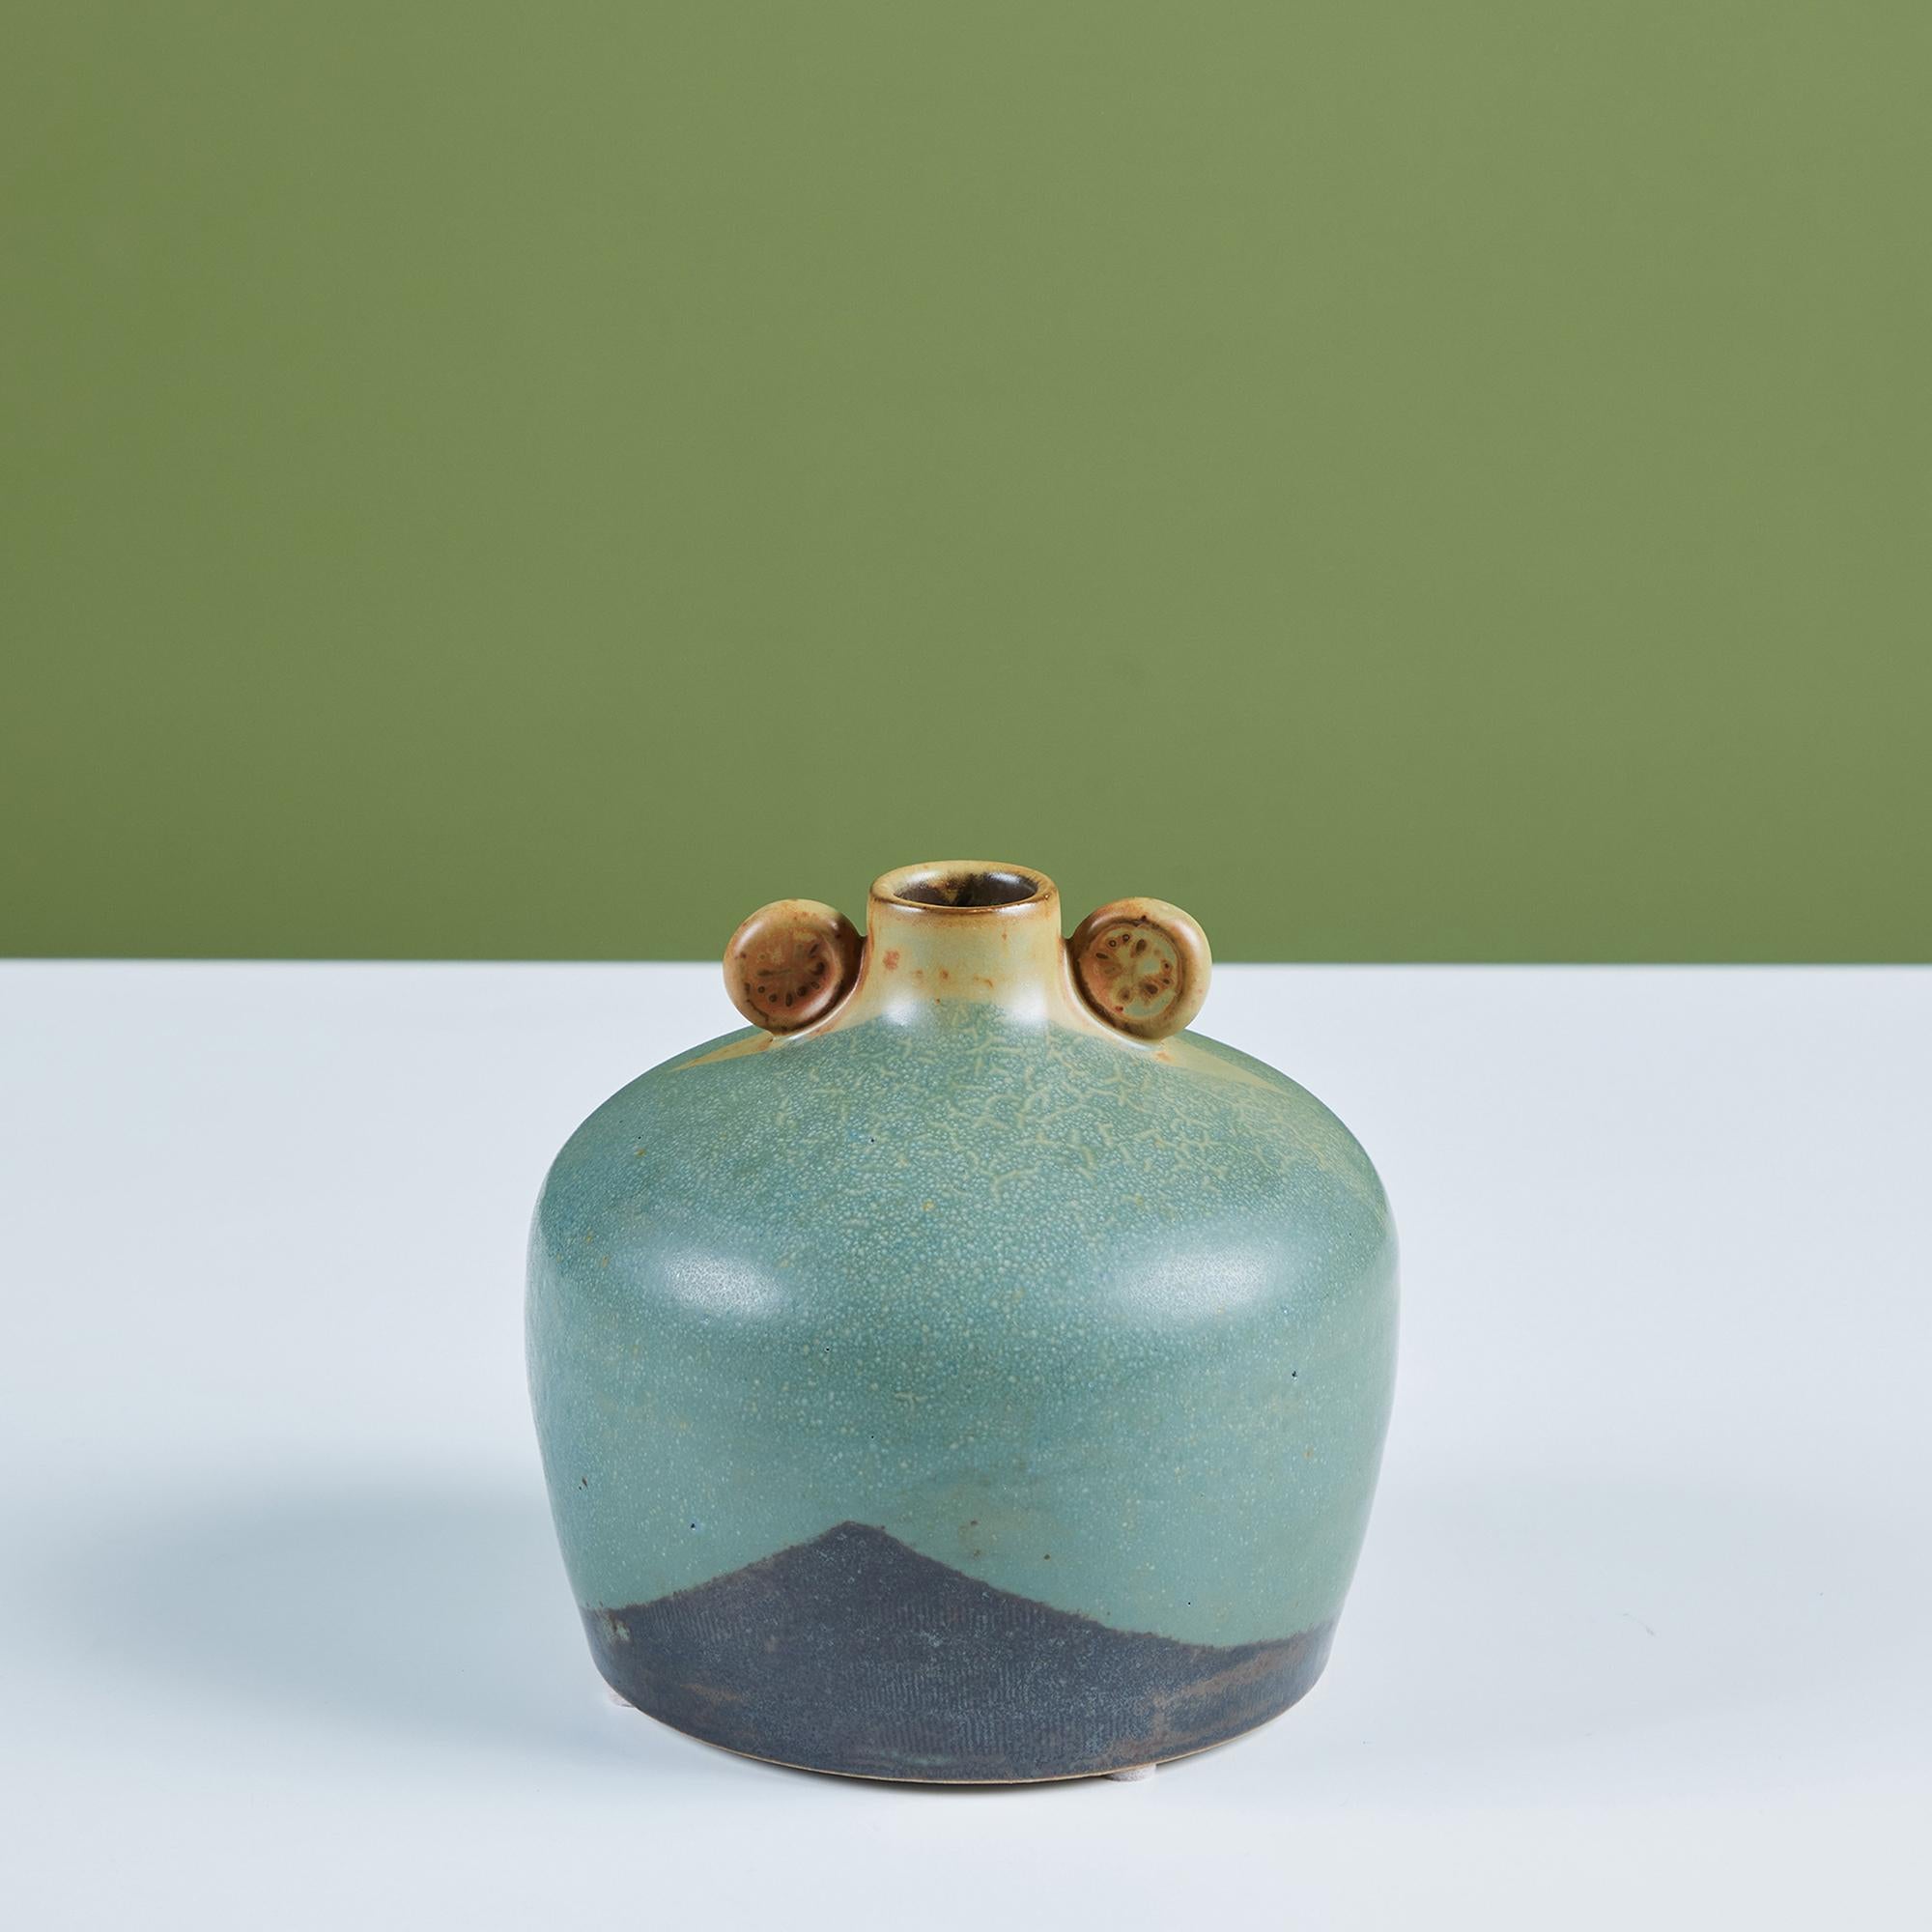 Un vase à bourgeons arrondi en poterie Studio avec une glaçure bleue à deux tons et de petites poignées arrondies à l'embouchure du vase.

Dimensions
5,5